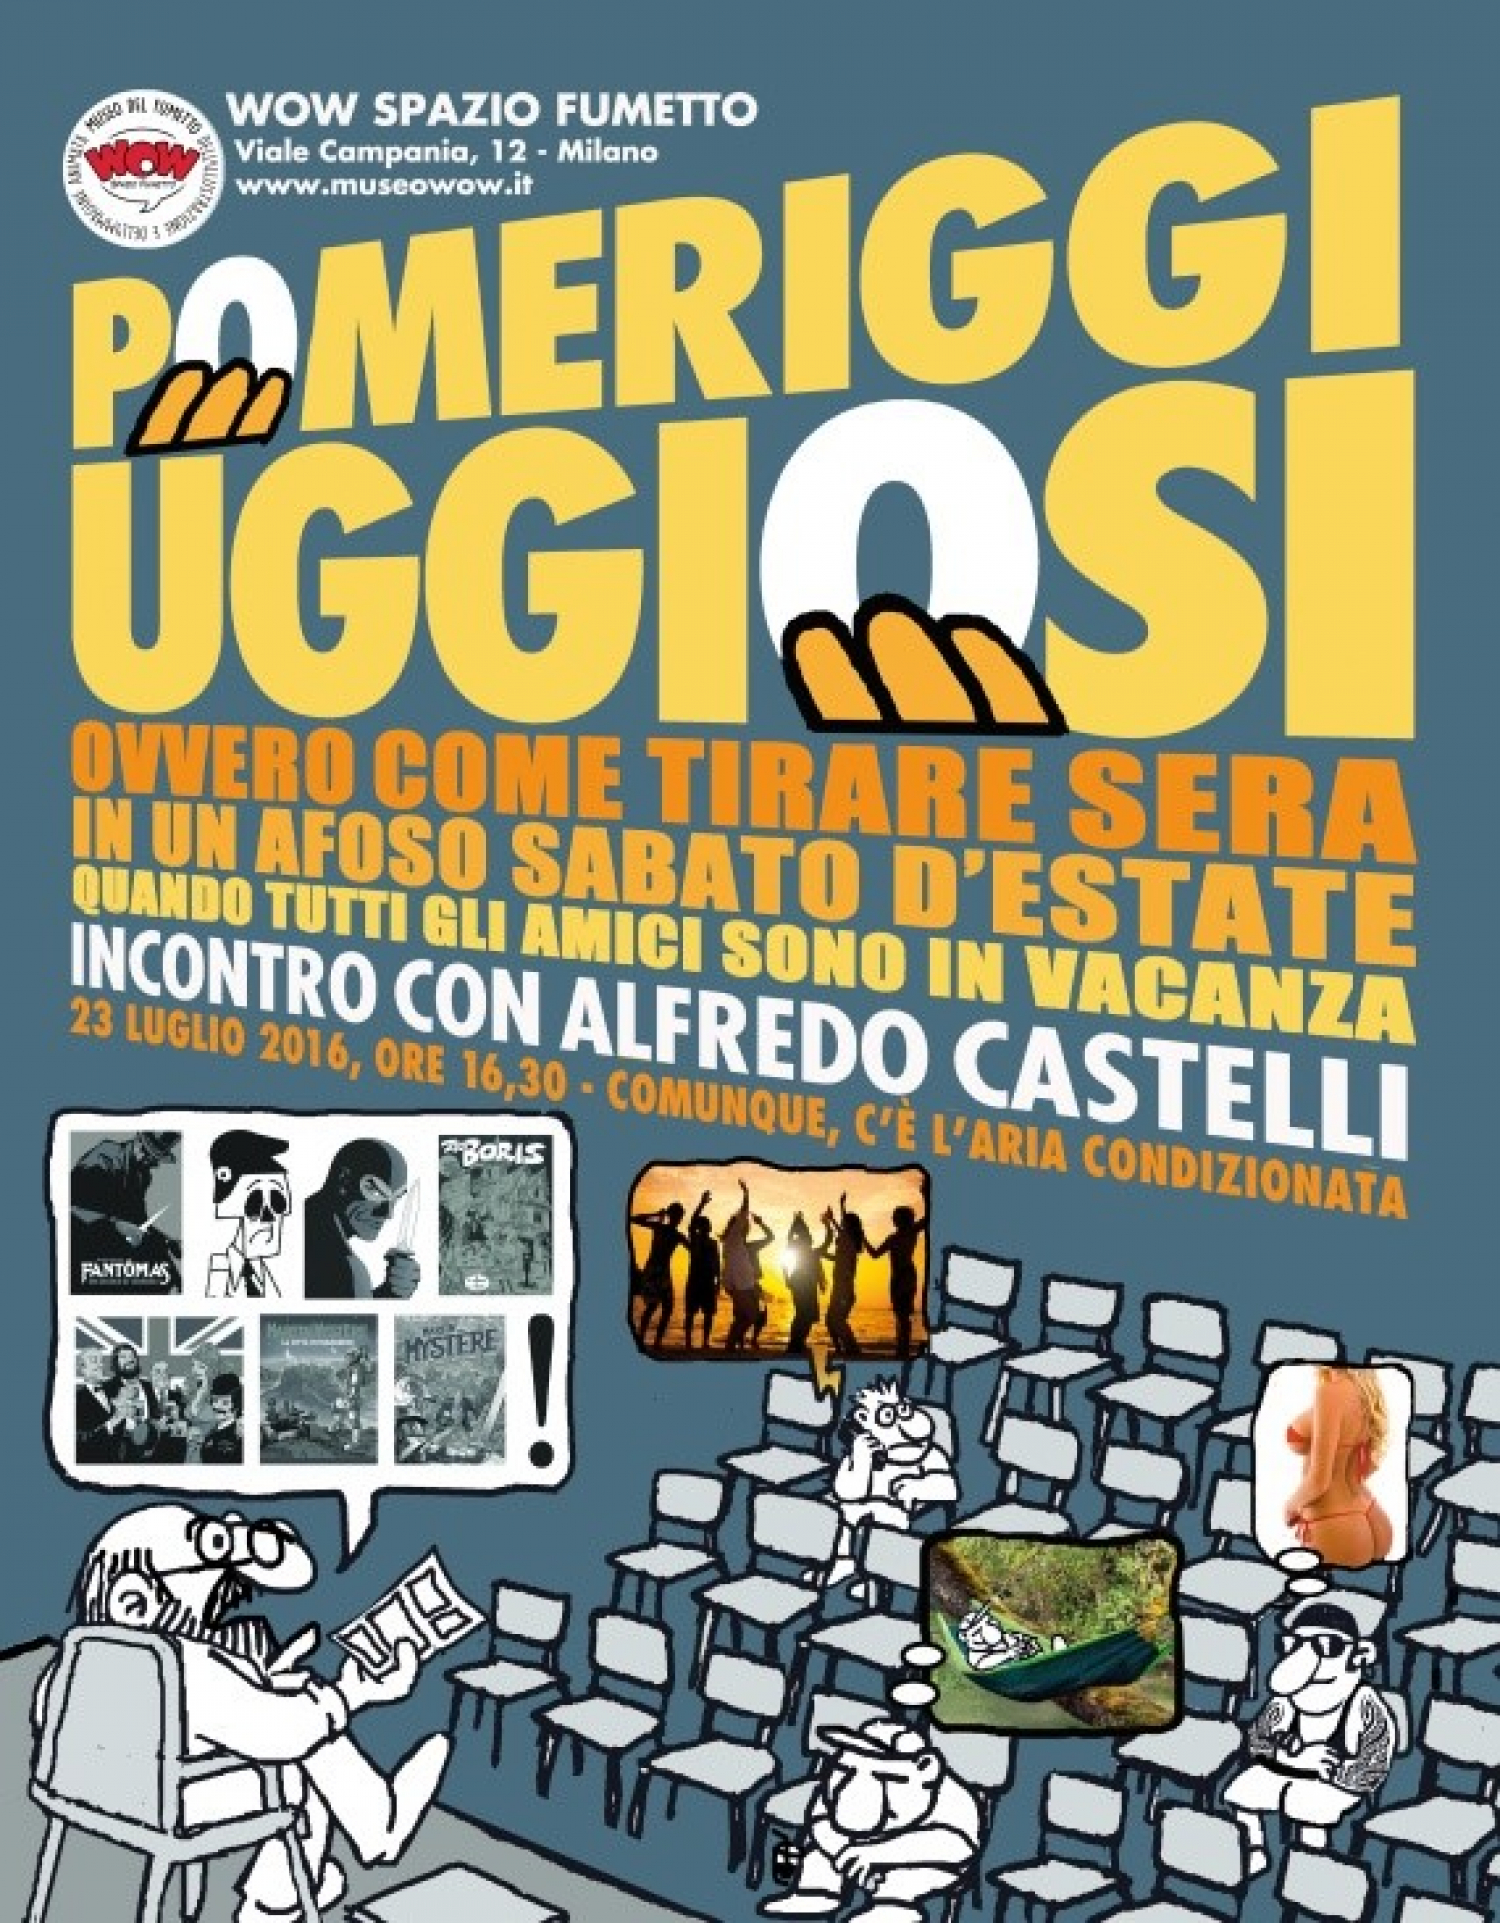 <p>Sabato 23 luglio <a target="_blank" href="http://www.sergiobonelli.it/sezioni/431/creatore"><strong>Alfredo Castelli</strong></a> sar&agrave; il protagonista di un <strong>incontro molto speciale</strong> dal titolo nel pi&ugrave; puro stile castelliano: POMERIGGI UGGIOSI, OVVERO COME TIRARE SERA IN UN SABATO D&#39;ESTATE QUANDO GLI AMICI SONO IN VACANZA. Oggi vi annoier&agrave; ALFREDO CASTELLI! Battute a parte, Alfredo Castelli non solo non &egrave; mai noioso ma soprattutto &egrave; uno degli autori meglio indicati a raccontarci le <strong>origini del &quot;Re del Terrore&quot;</strong>: oltre ad aver scritto il pi&ugrave; completo volume mai dedicato al mito di&nbsp;<strong>Fant&ocirc;mas</strong>, ha cominciato a collaborare a Diabolik nel 1964, pochissimo tempo dopo la sua creazione. Nel gennaio 1965, sulle pagine di Diabolik, &egrave; comparso il suo primo lavoro fumettistico, la serie umoristica <em><strong>Scheletrino</strong></em>; poco pi&ugrave; tardi ha cominciato a scrivere le avventure dell&#39;inafferrabile criminale, alcune delle quali, come &quot;La morte di Eva Kant&quot;, sono divenute dei classici. Soprattutto &egrave; all&#39;origine di molte idee diabolike &ldquo;fuori canone&rdquo;, dalle strisce per i quotidiani, ai racconti brevi &ldquo;localizzabili&rdquo; al &ldquo;remake&rdquo; della prima avventura. Dalla sua collaborazione con Mario Gomboli sono nate <strong>Diabetik</strong> - la prima delle molte parodie di Diabolik - e otto storie pubblicate da<em> Cosmopolitan</em>, nelle quali Eva Kant &egrave; protagonista assoluta. L&rsquo;incontro &egrave; anche l&rsquo;occasione per occuparci dei <strong>progetti futuri</strong> di Castelli: si comincia con gli albetti <strong>La citt&agrave; in equilibrio</strong>, illustrato da Torti e ambientato a Civita di Bagnoregio, per arrivare a <em><strong>Martin Myst&egrave;re incontra Zio Boris</strong></em>, il pi&ugrave; recente di una serie di fascicoli pubblicati fin dal 2003 nell&rsquo;ambito di Riminicomix. <strong>Zio Boris</strong>, lastriscia a fumetti creata nel 1969 da Alfredo Castelli &amp; Carlo Peroni e ripresa oggi da Daniele Fagarazzi in appendice a Martin Myst&egrave;re, potrebbe infatti avere presto un sorprendente rilancio. Si spazier&agrave; sul passato e sul futuro sfogliando lo &quot;<strong>Speciale Martin Myst&egrave;re</strong>&rdquo; numero 33, <em><strong>Anni 30: Troppi Super Eroi!</strong></em>, e, soprattutto, si parler&agrave; dei due grandi eventi mysteriani del 2016, che vedranno la luce il 1&deg; settembre e il 5 novembre di quest&rsquo;anno. <strong>Alfredo Castelli</strong> (Milano, 1947) ha celebrato nel 2015 il cinquantesimo anno della sua variegata attivit&agrave; nell&rsquo;ambito del fumetto: ha infatti esordito giovanissimo nel 1965 come sceneggiatore specializzato per il target ragazzi. Ideatore della popolare serie <em>Martin Myst&egrave;re</em>, pubblicata a partire dal 1982 da Sergio Bonelli Editore, &egrave; giornalista professionista dal 1974.</p>